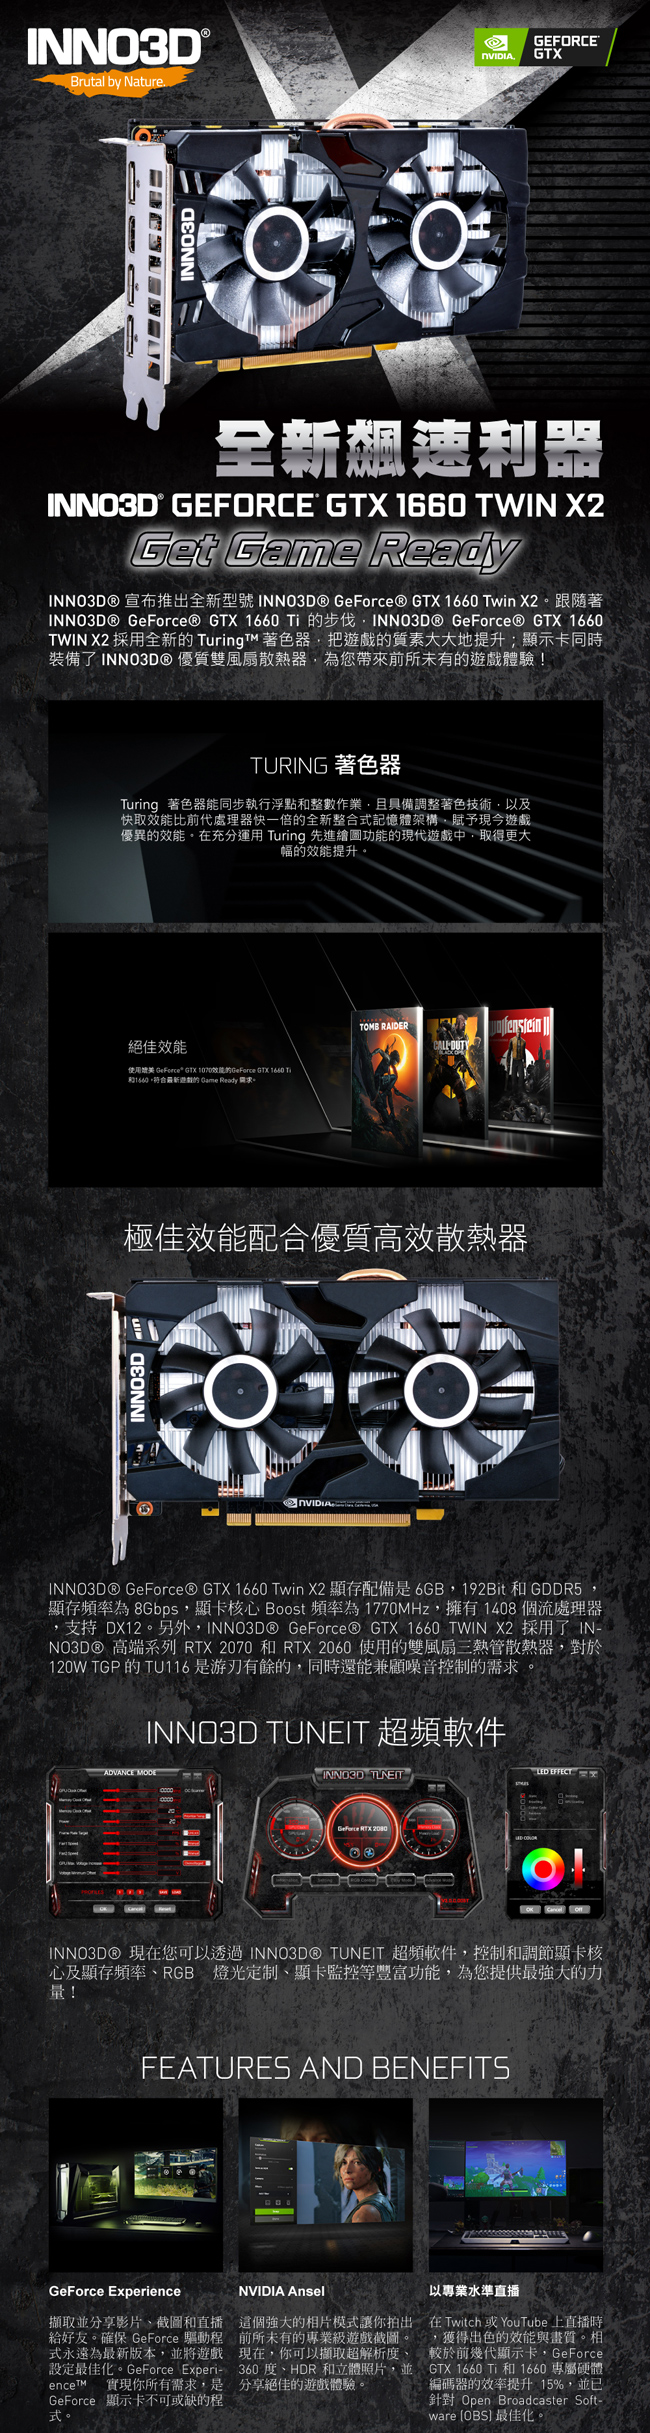 映眾顯示卡 GeForce GTX 1660 6GB GDDR5 Twin X2